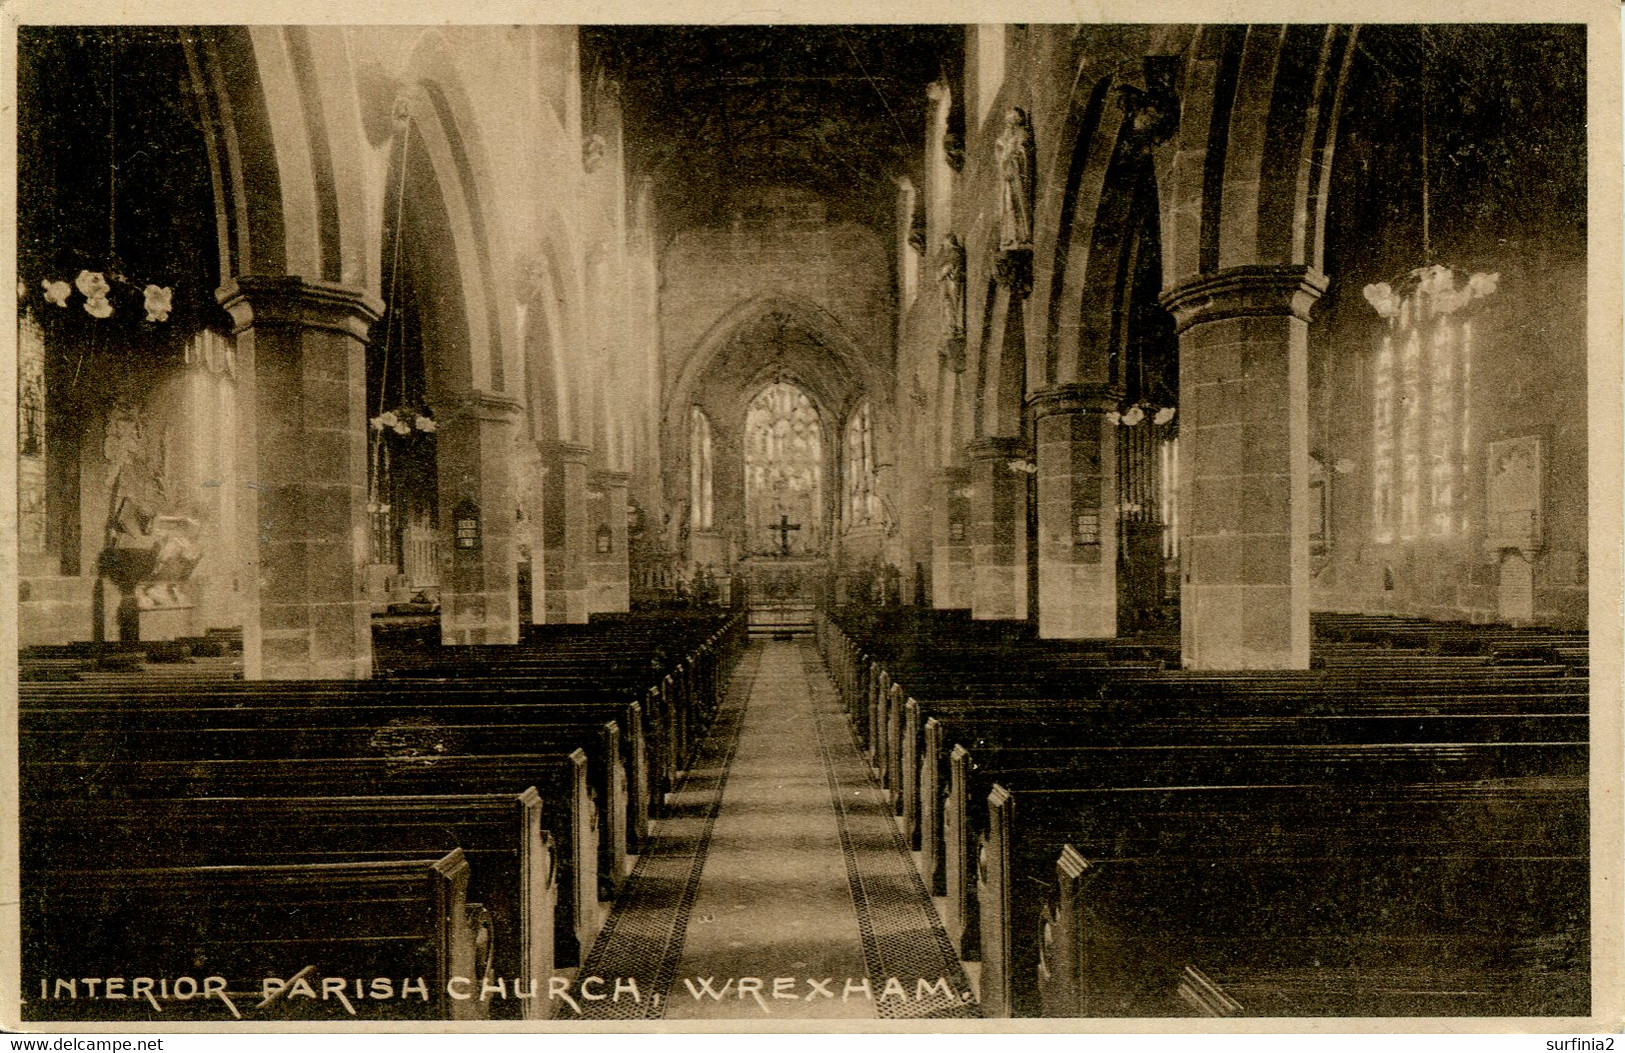 CLWYD - WREXHAM - INTERIOR PARISH CHURCH Clw455 - Flintshire